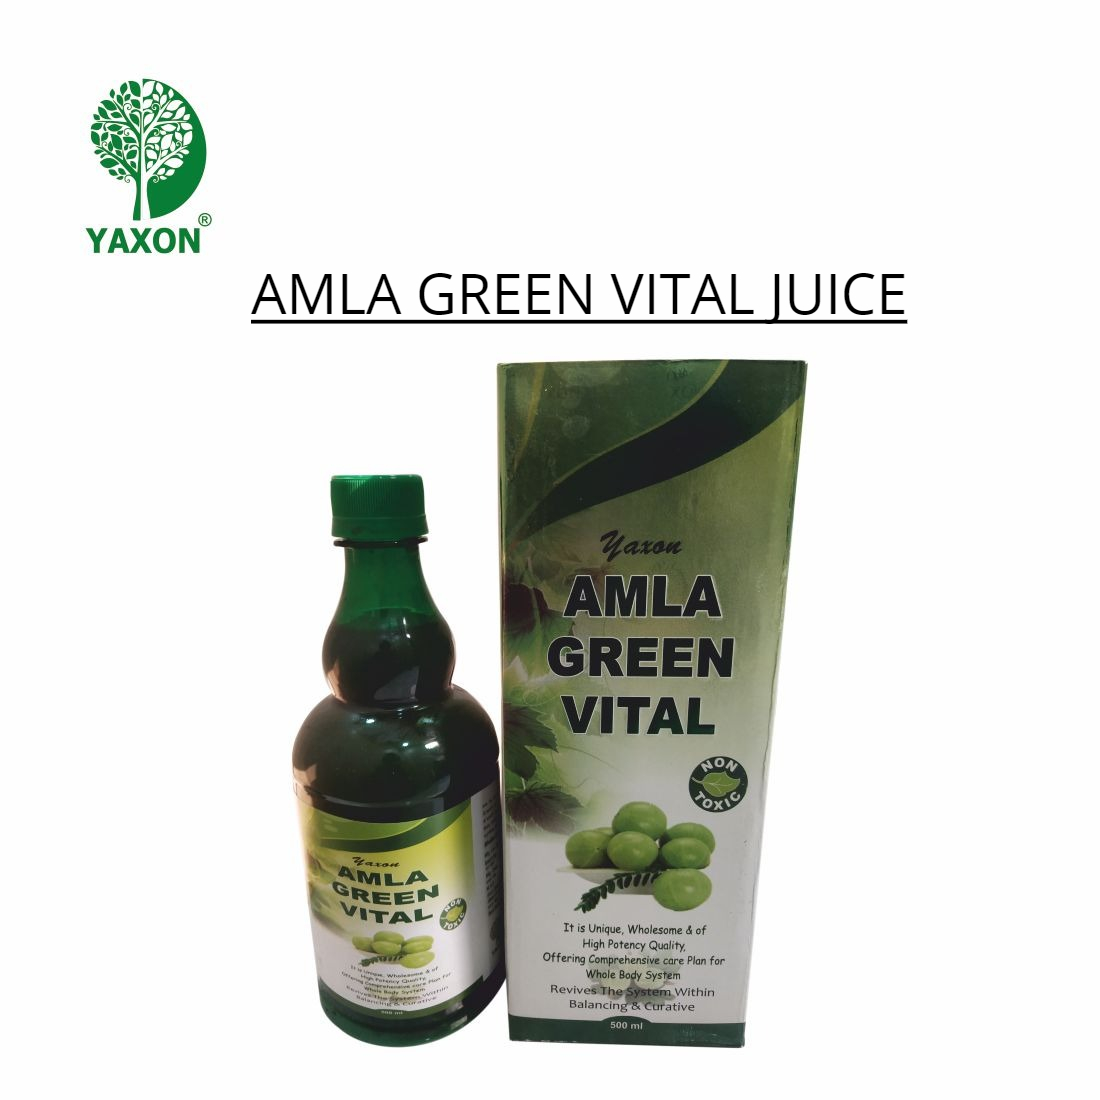 YAXON AMLA GREEN VITAL Ayurvedic Juice | YAXON BIOCARE PVT. LTD.